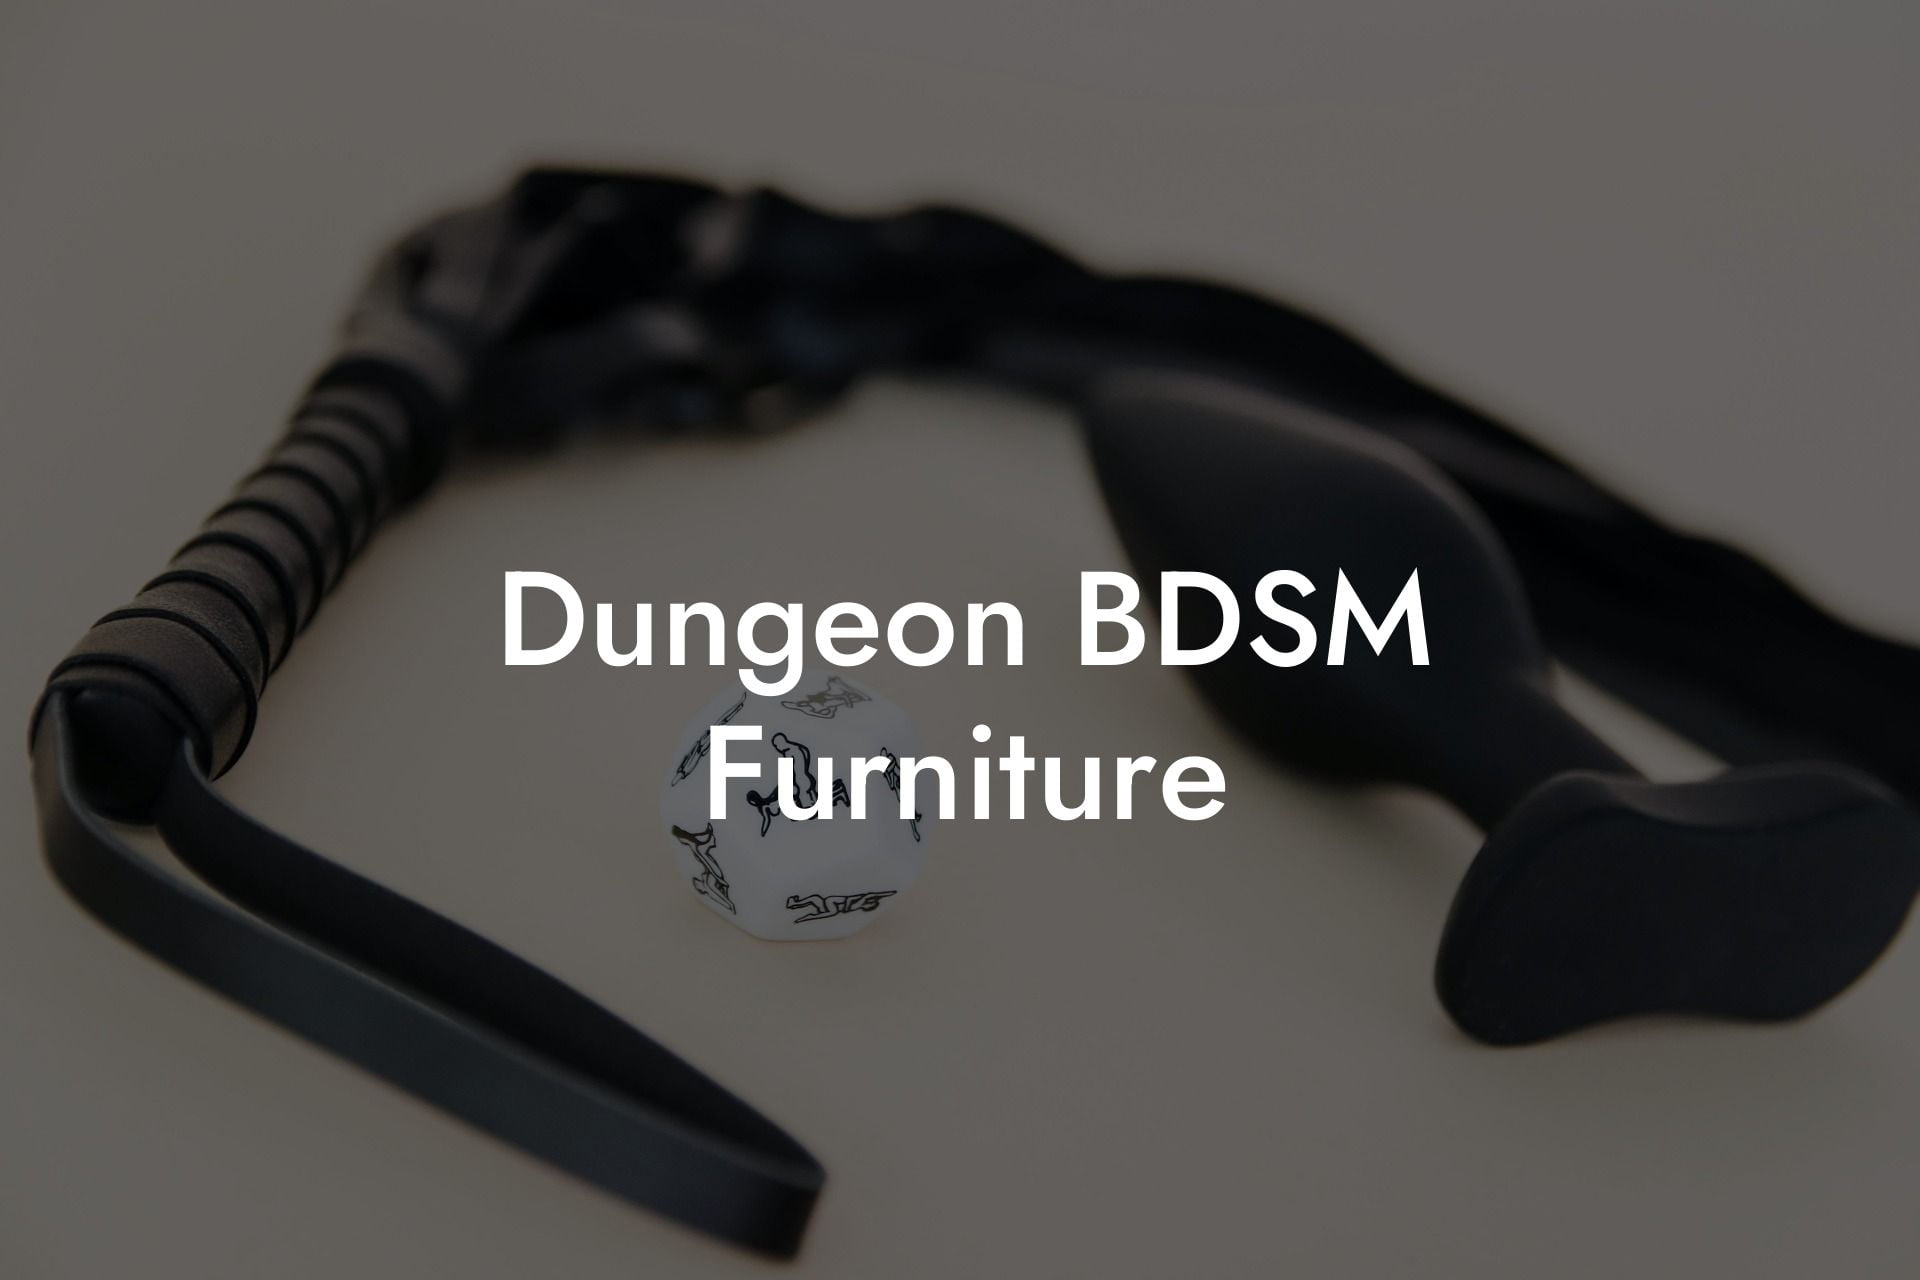 Dungeon BDSM Furniture